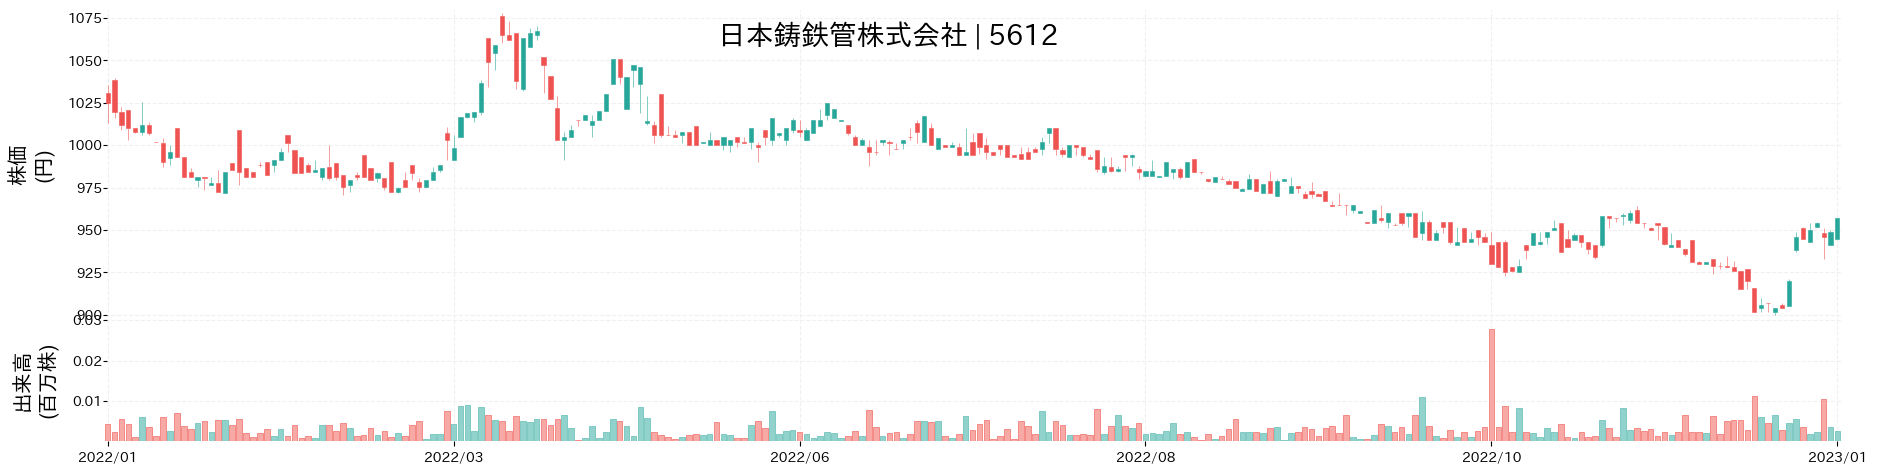 日本鋳鉄管の株価推移(2022)